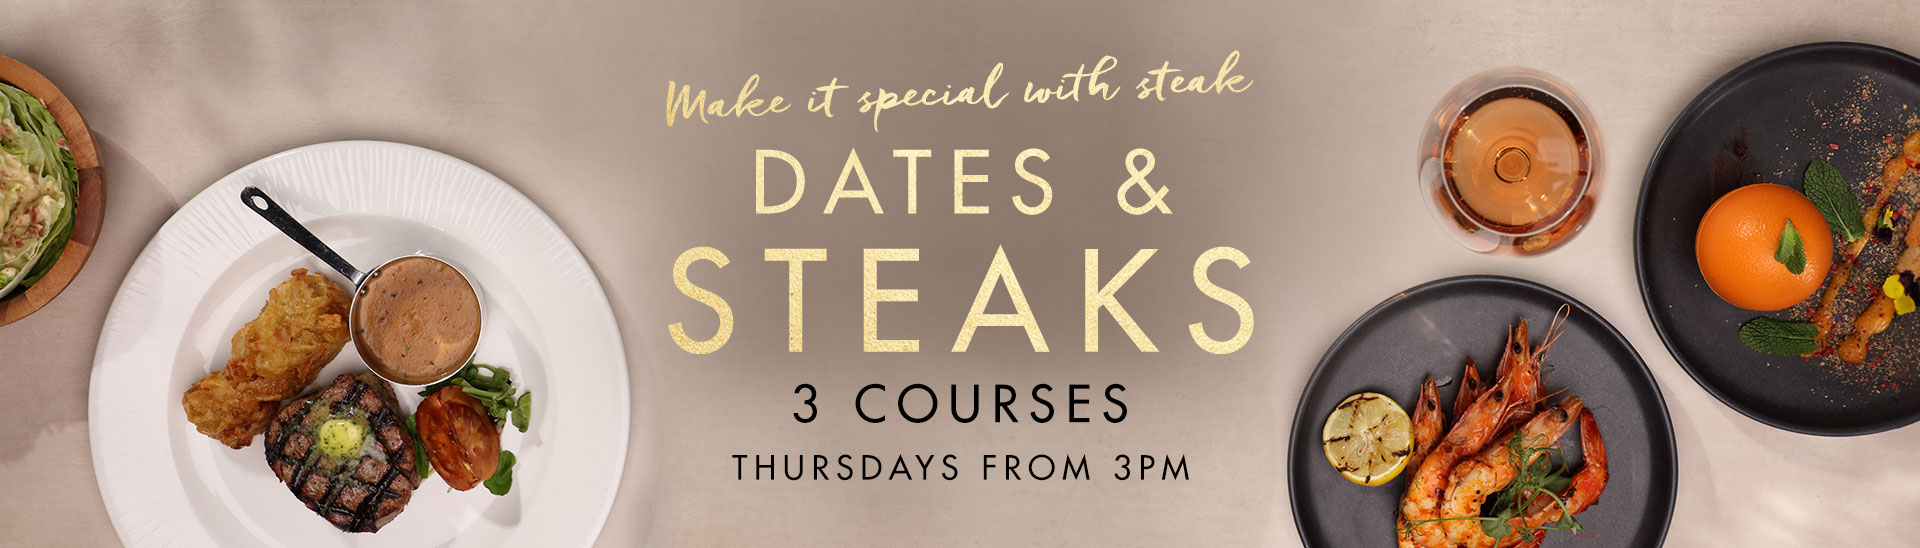 Dates & Steaks at Miller & Carter Sunderland